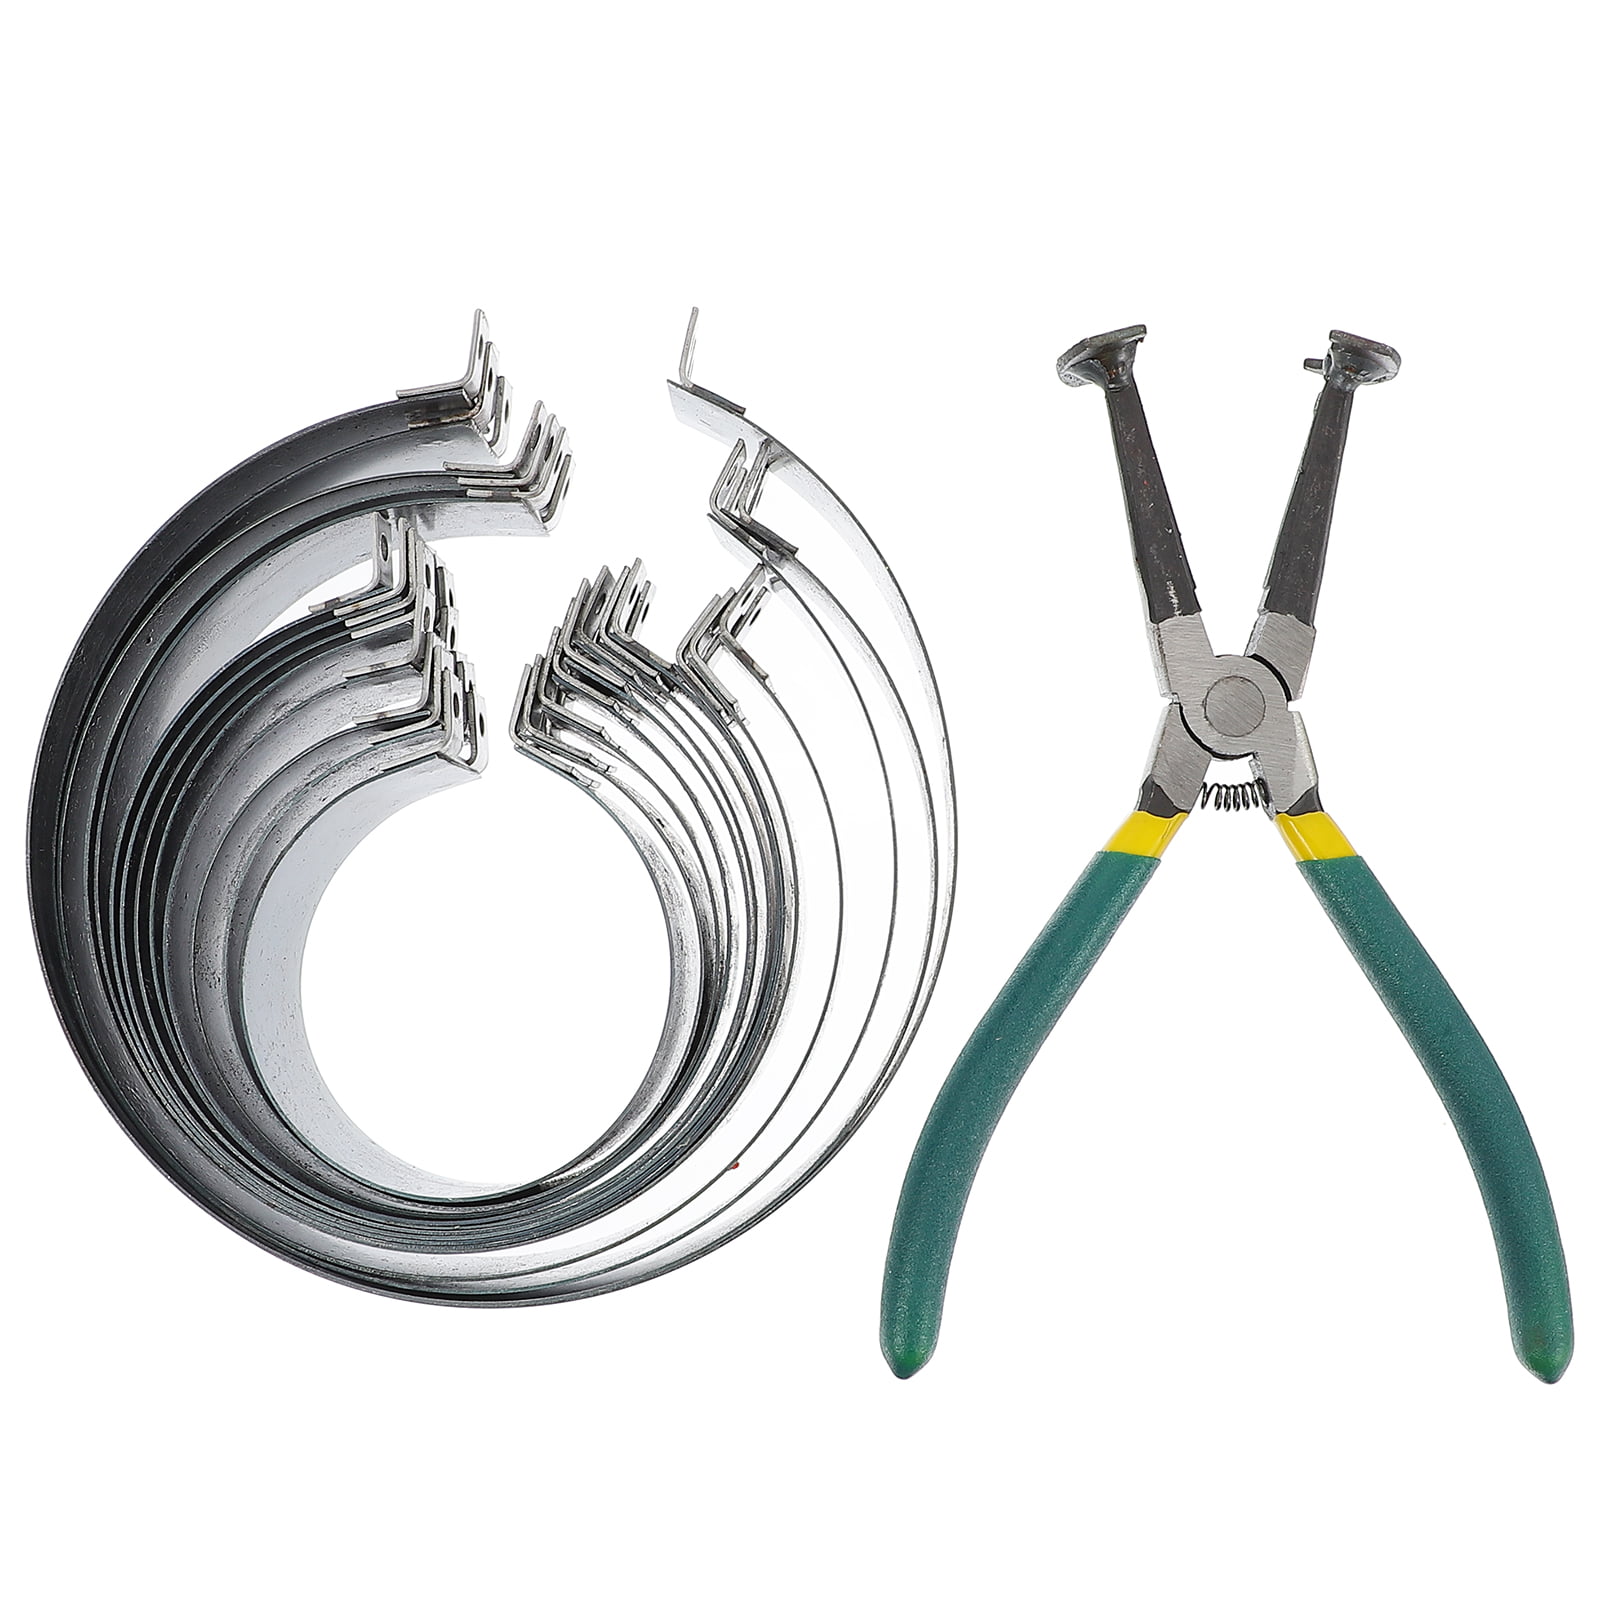 Piston Ring Compressor Cylinder Installer Removal Plier Tool Set 2.4-5.7’’ Large 